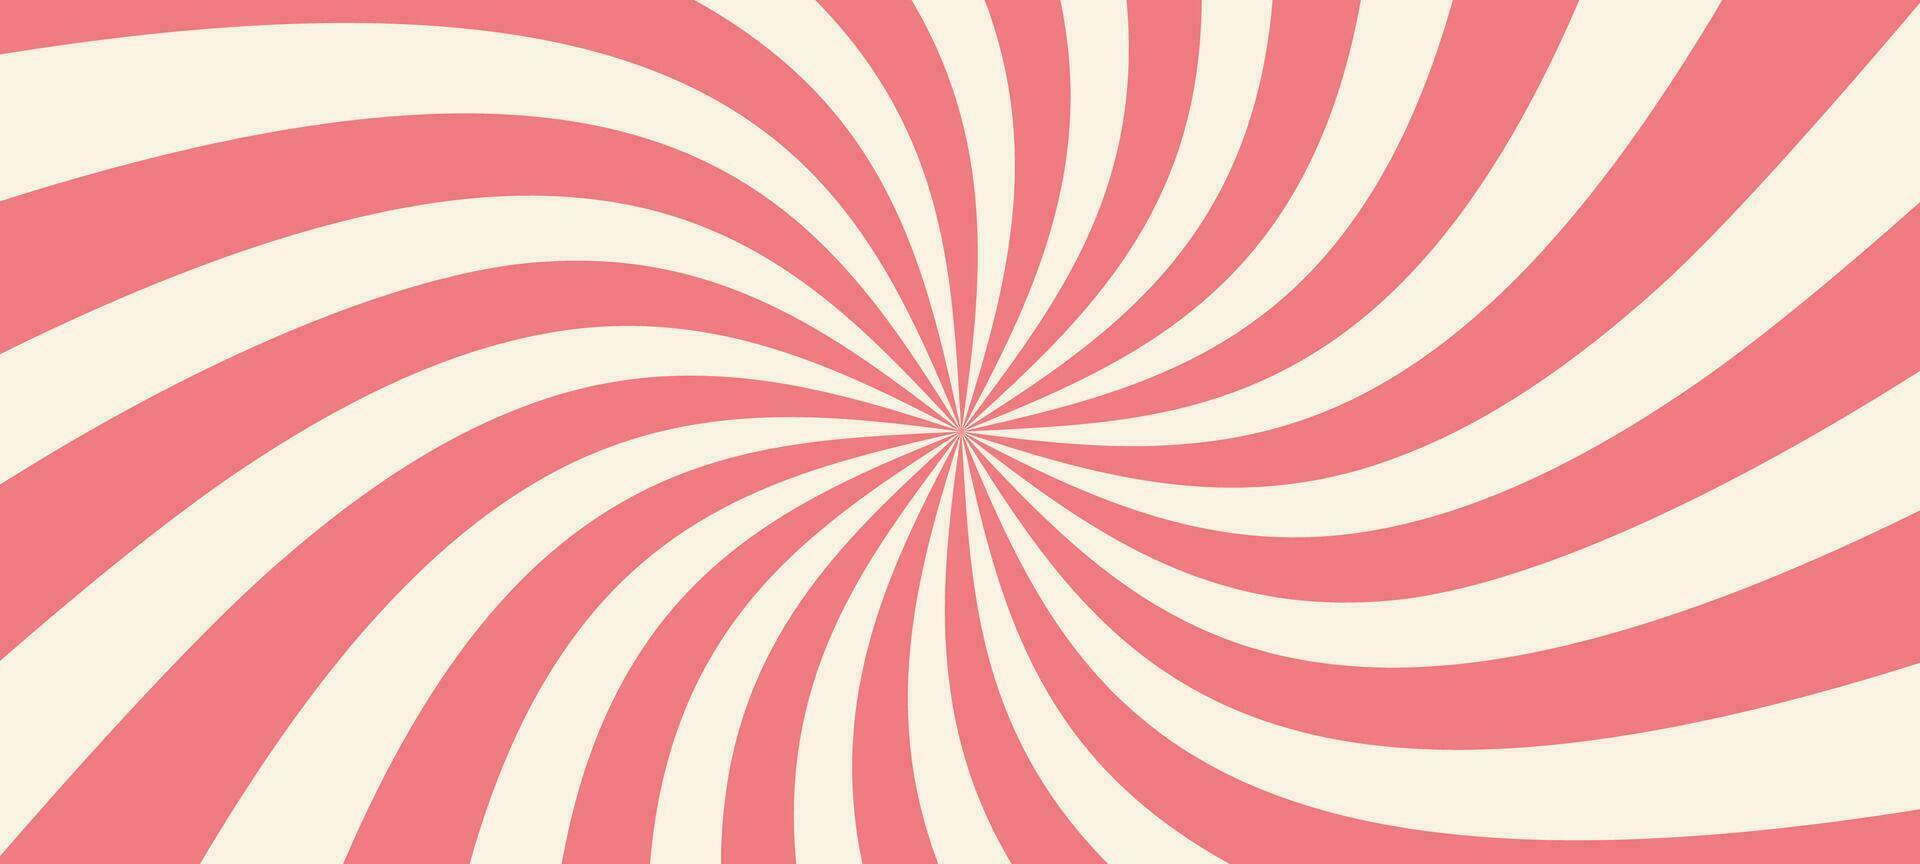 Rosa Eis Sahne und Süßigkeiten Strudel Hintergrund, Lutscher Wirbel Muster vermischt mit Erdbeere und Zirkus Elemente. retro Spiral- Design. eben Vektor Illustration isoliert